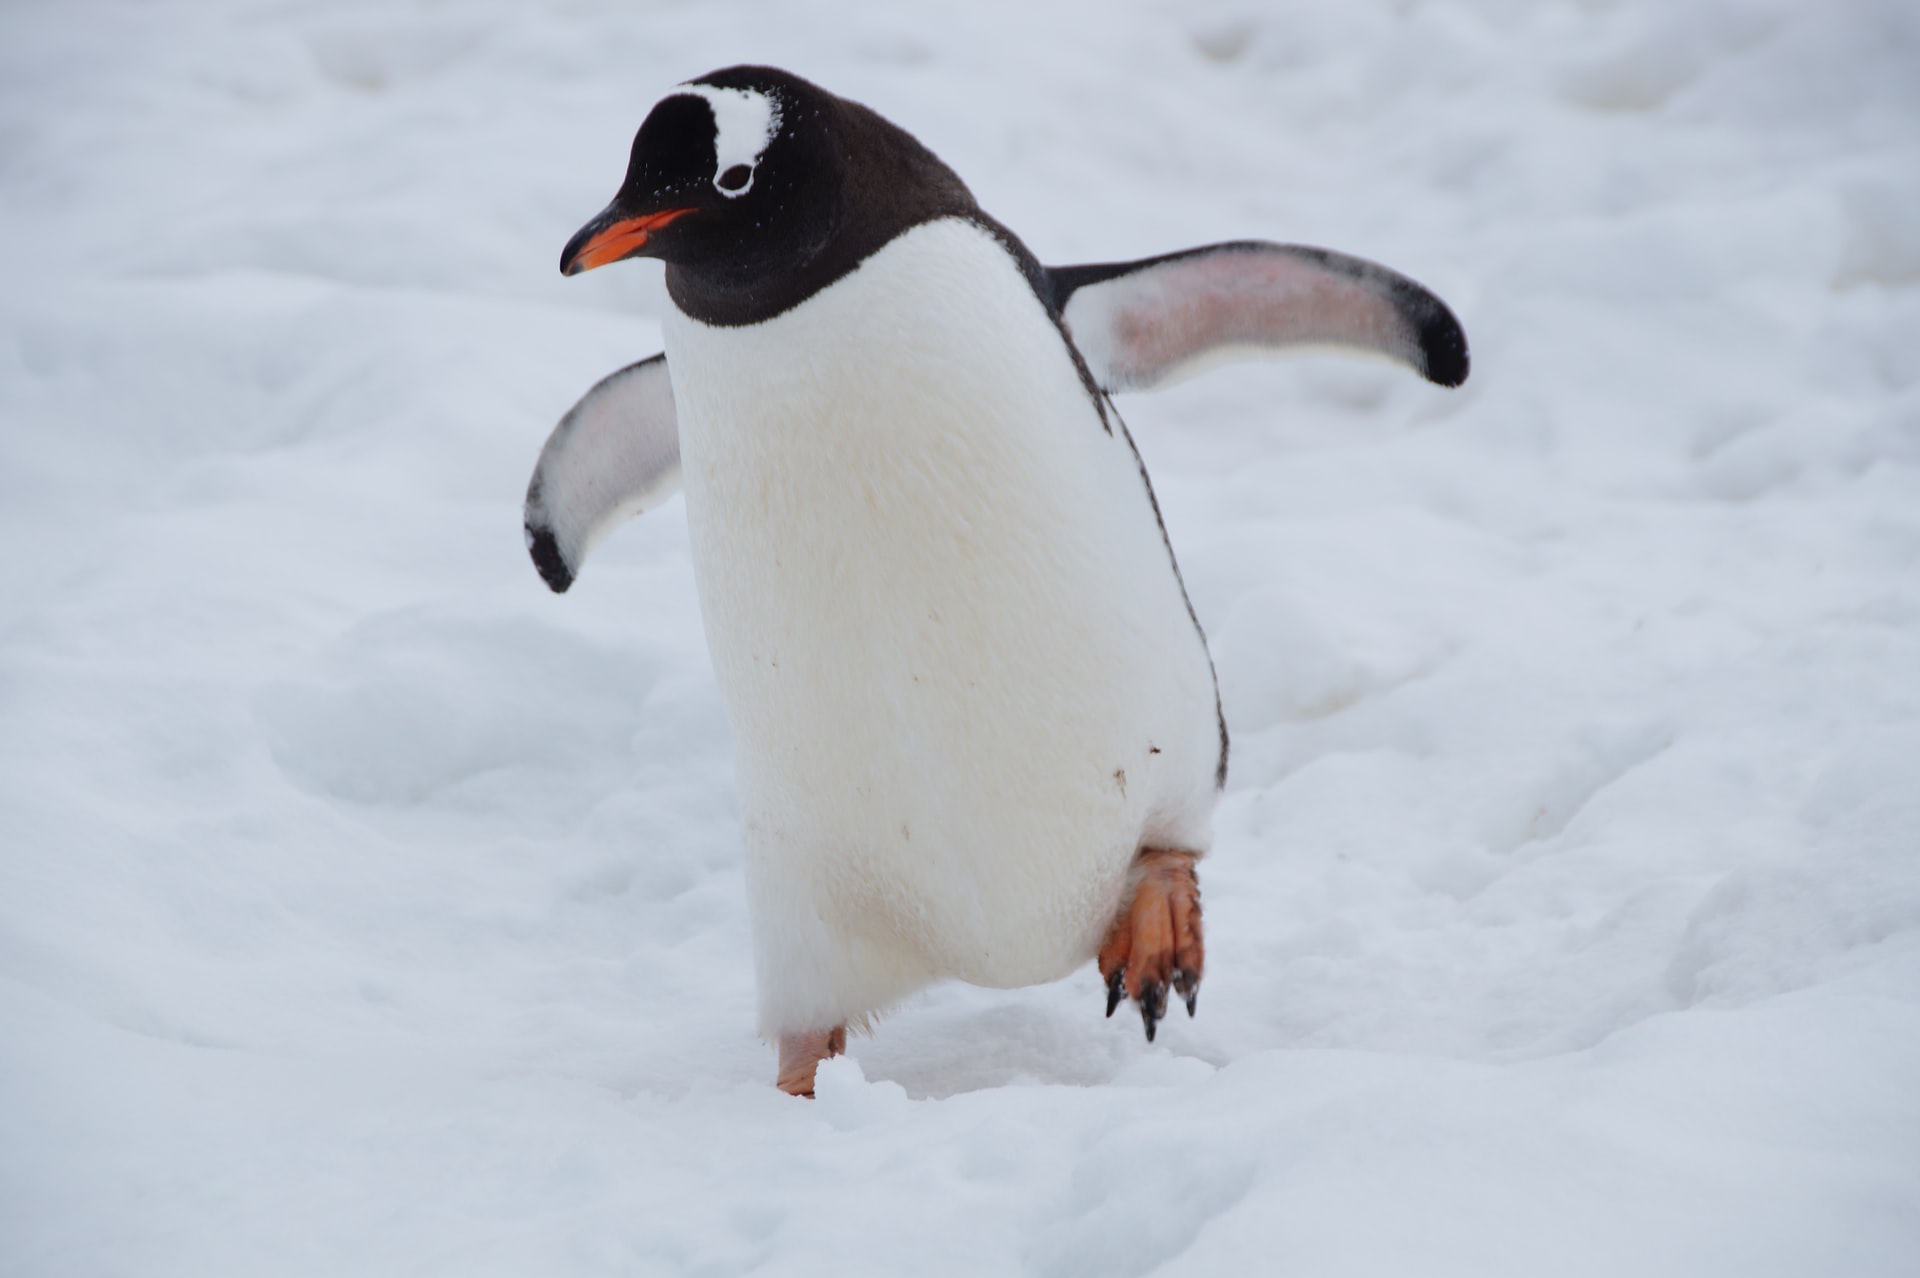 Pinguim gamer: Linux chega a 1% da base da Steam em pesquisa da Valve